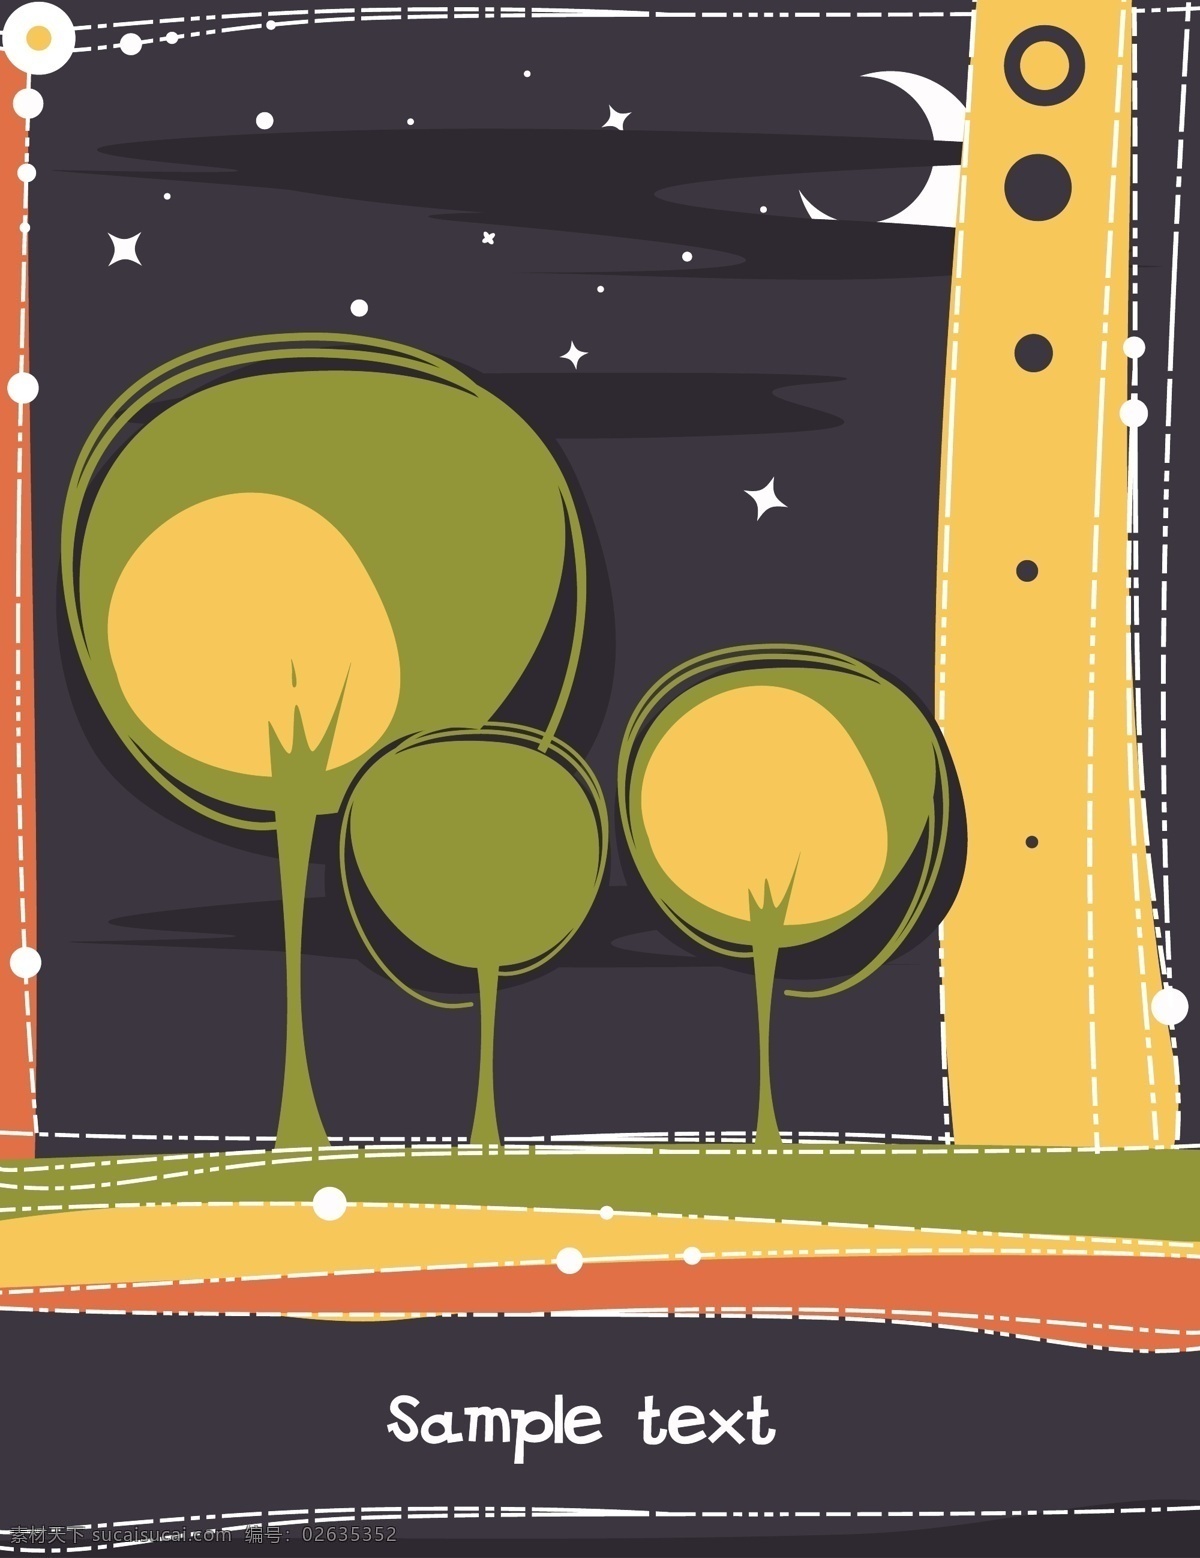 抽象树 黑夜 卡通 卡通矢量素材 手绘 手绘树 手绘树木 树木插画 中 小树 树木树叶 植物插画 月亮 星星 线条 矢量 插画集